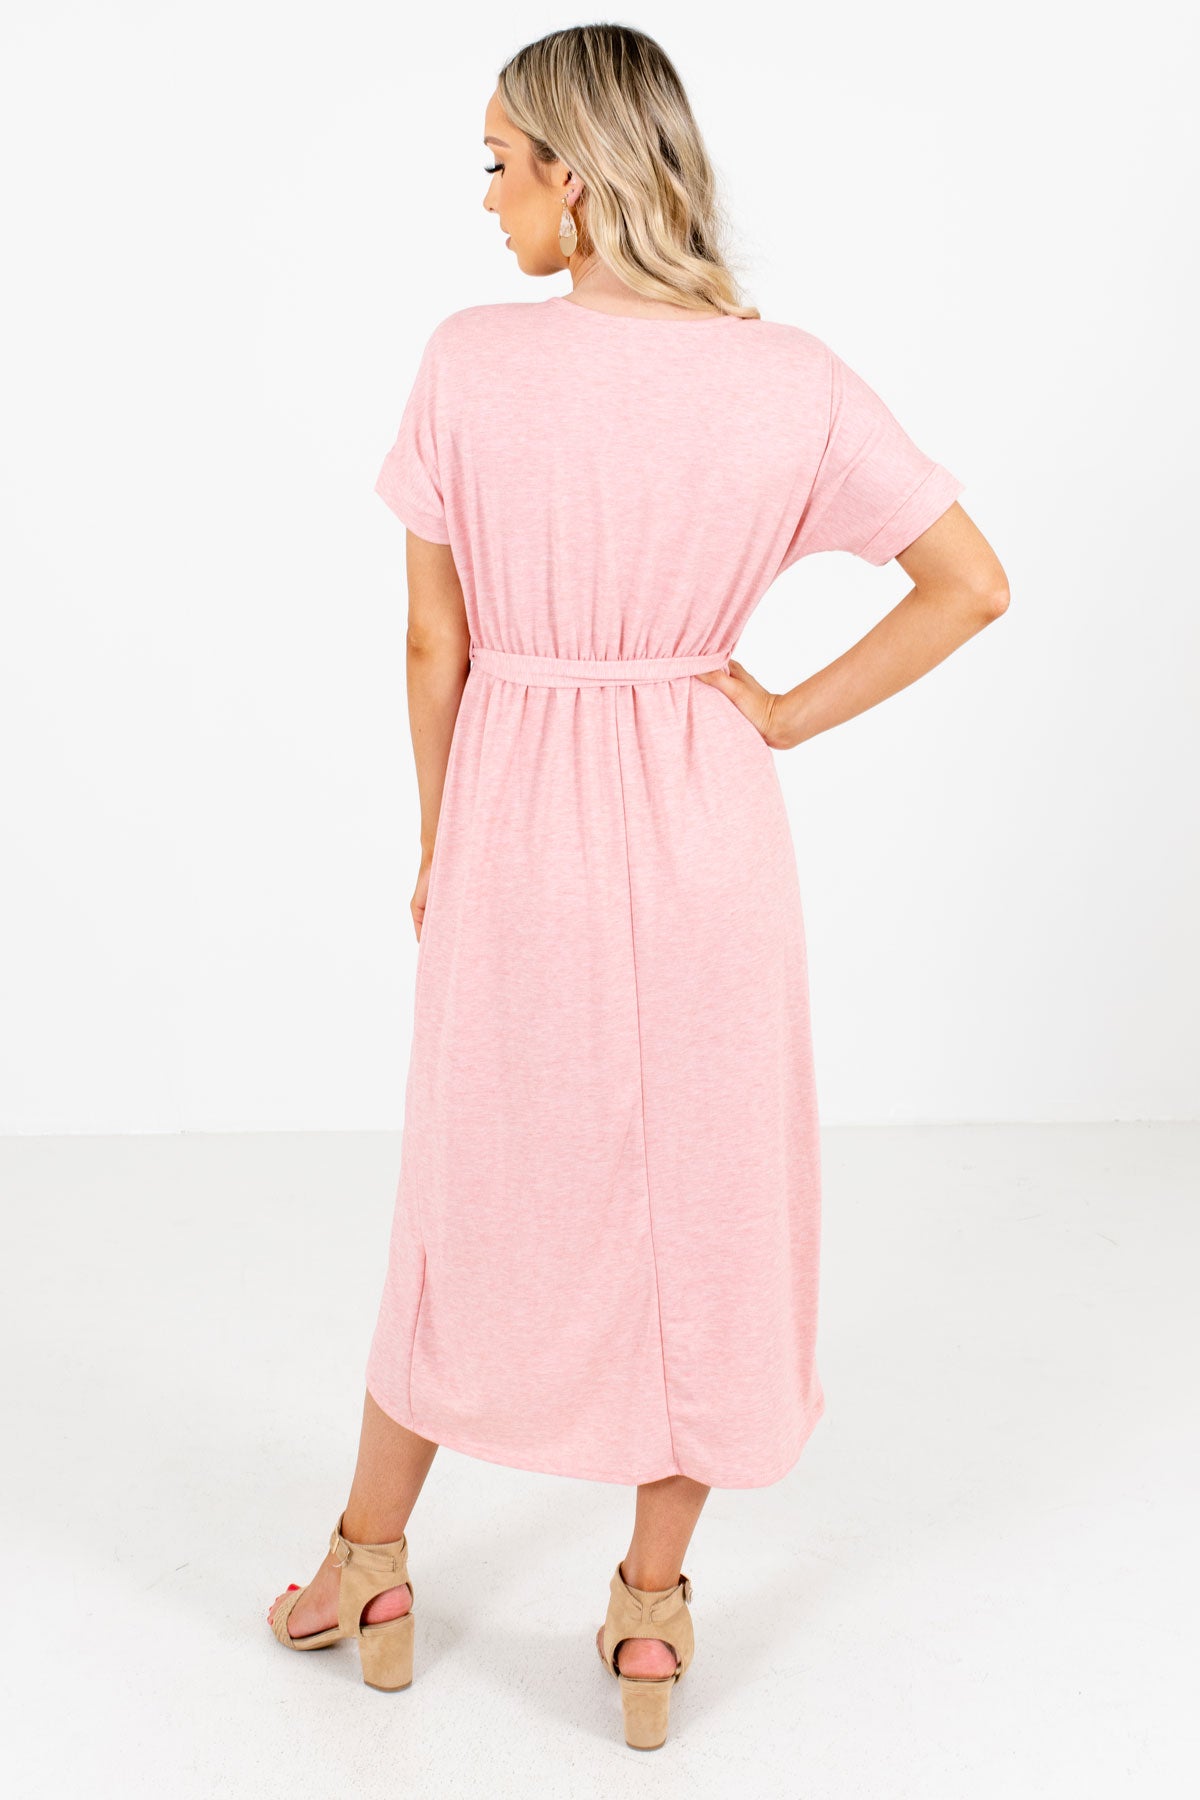 Women's Pink Elastic Waistband Boutique Knee-Length Dress